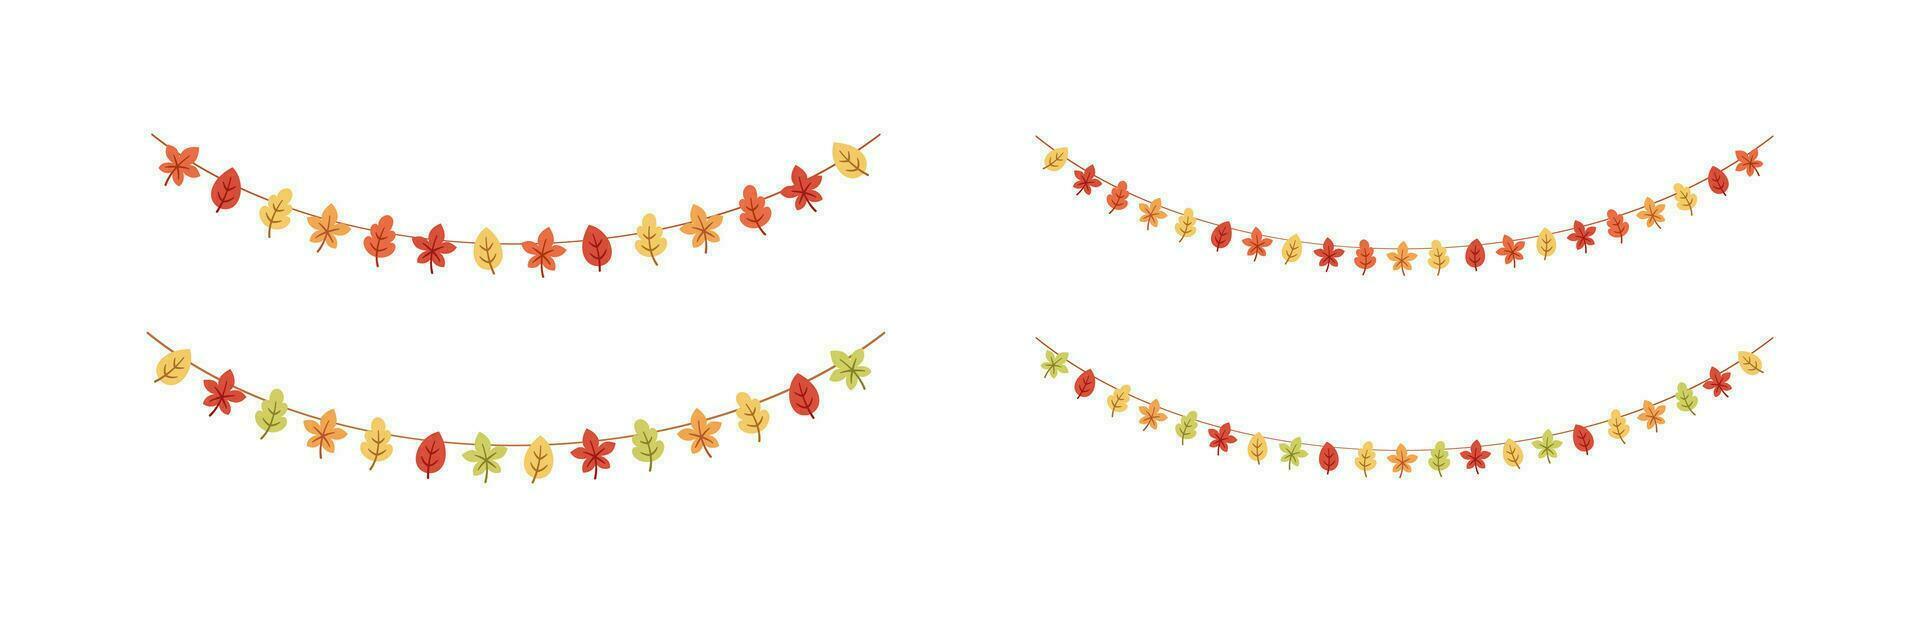 Herbst Blätter Girlande im Orange und rot Farben zum fallen und das Erntedankfest Jahreszeit Satz. Vektor isoliert auf Weiß Hintergrund.